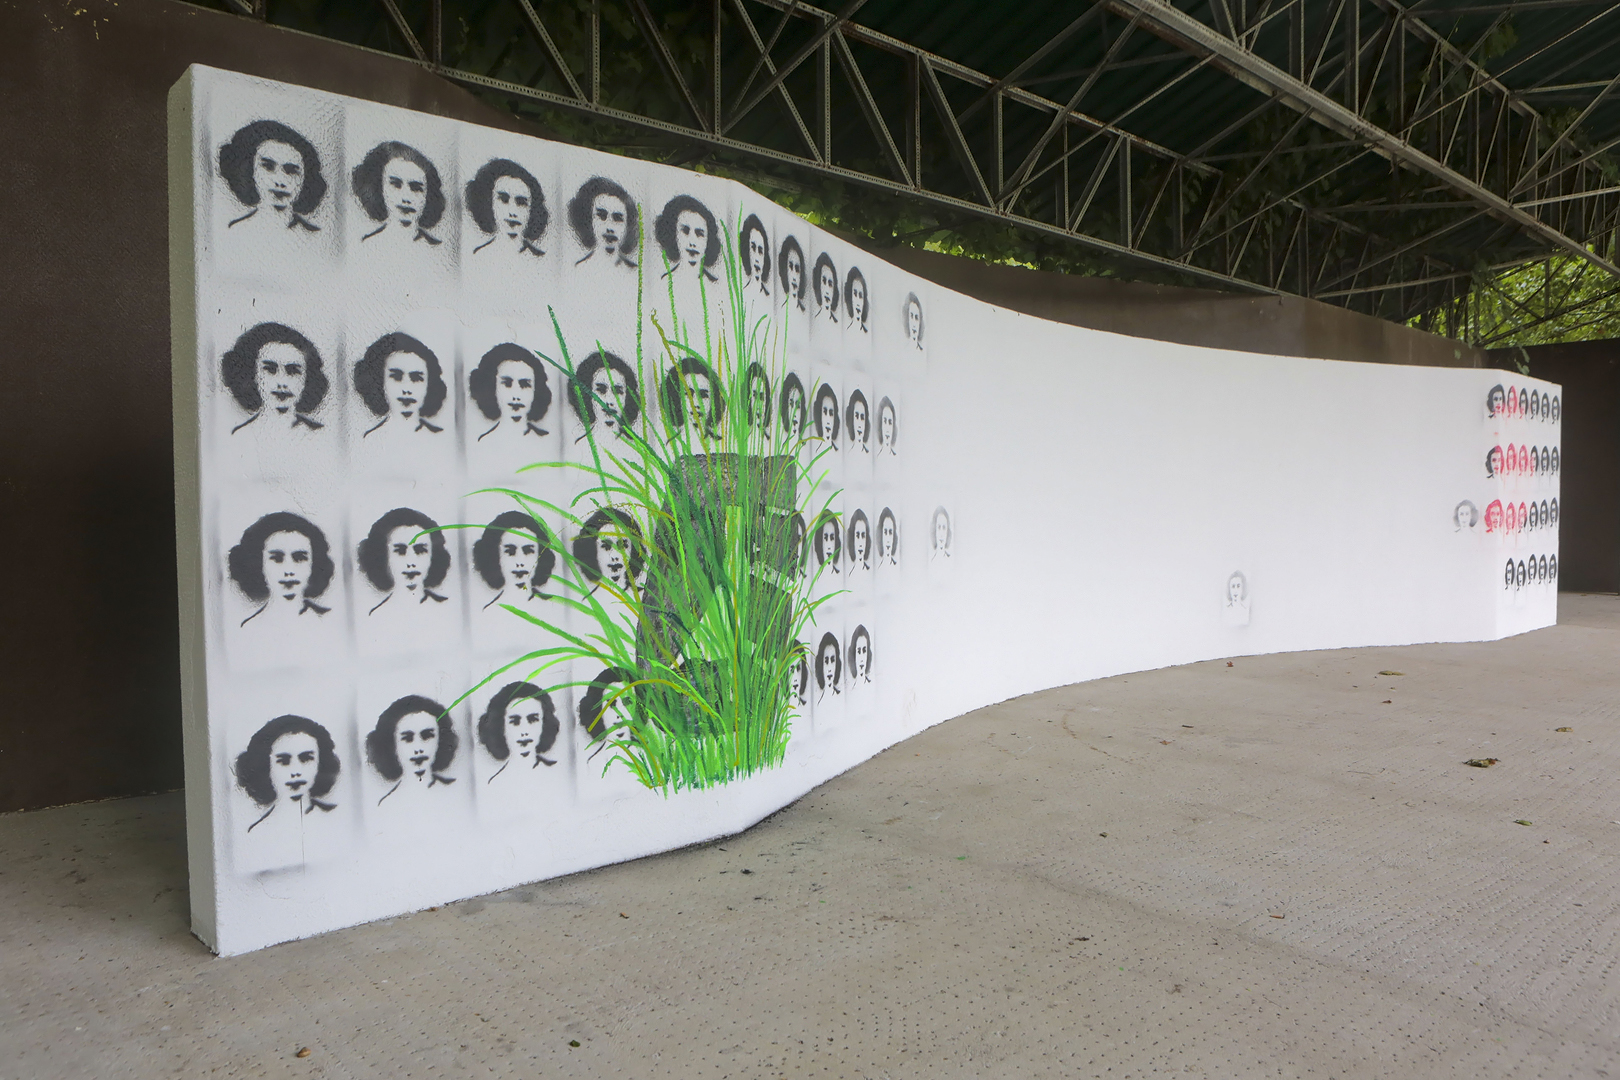 CAMINHA: Vilar de Mouros com mural para assinalar 40 anos de festival